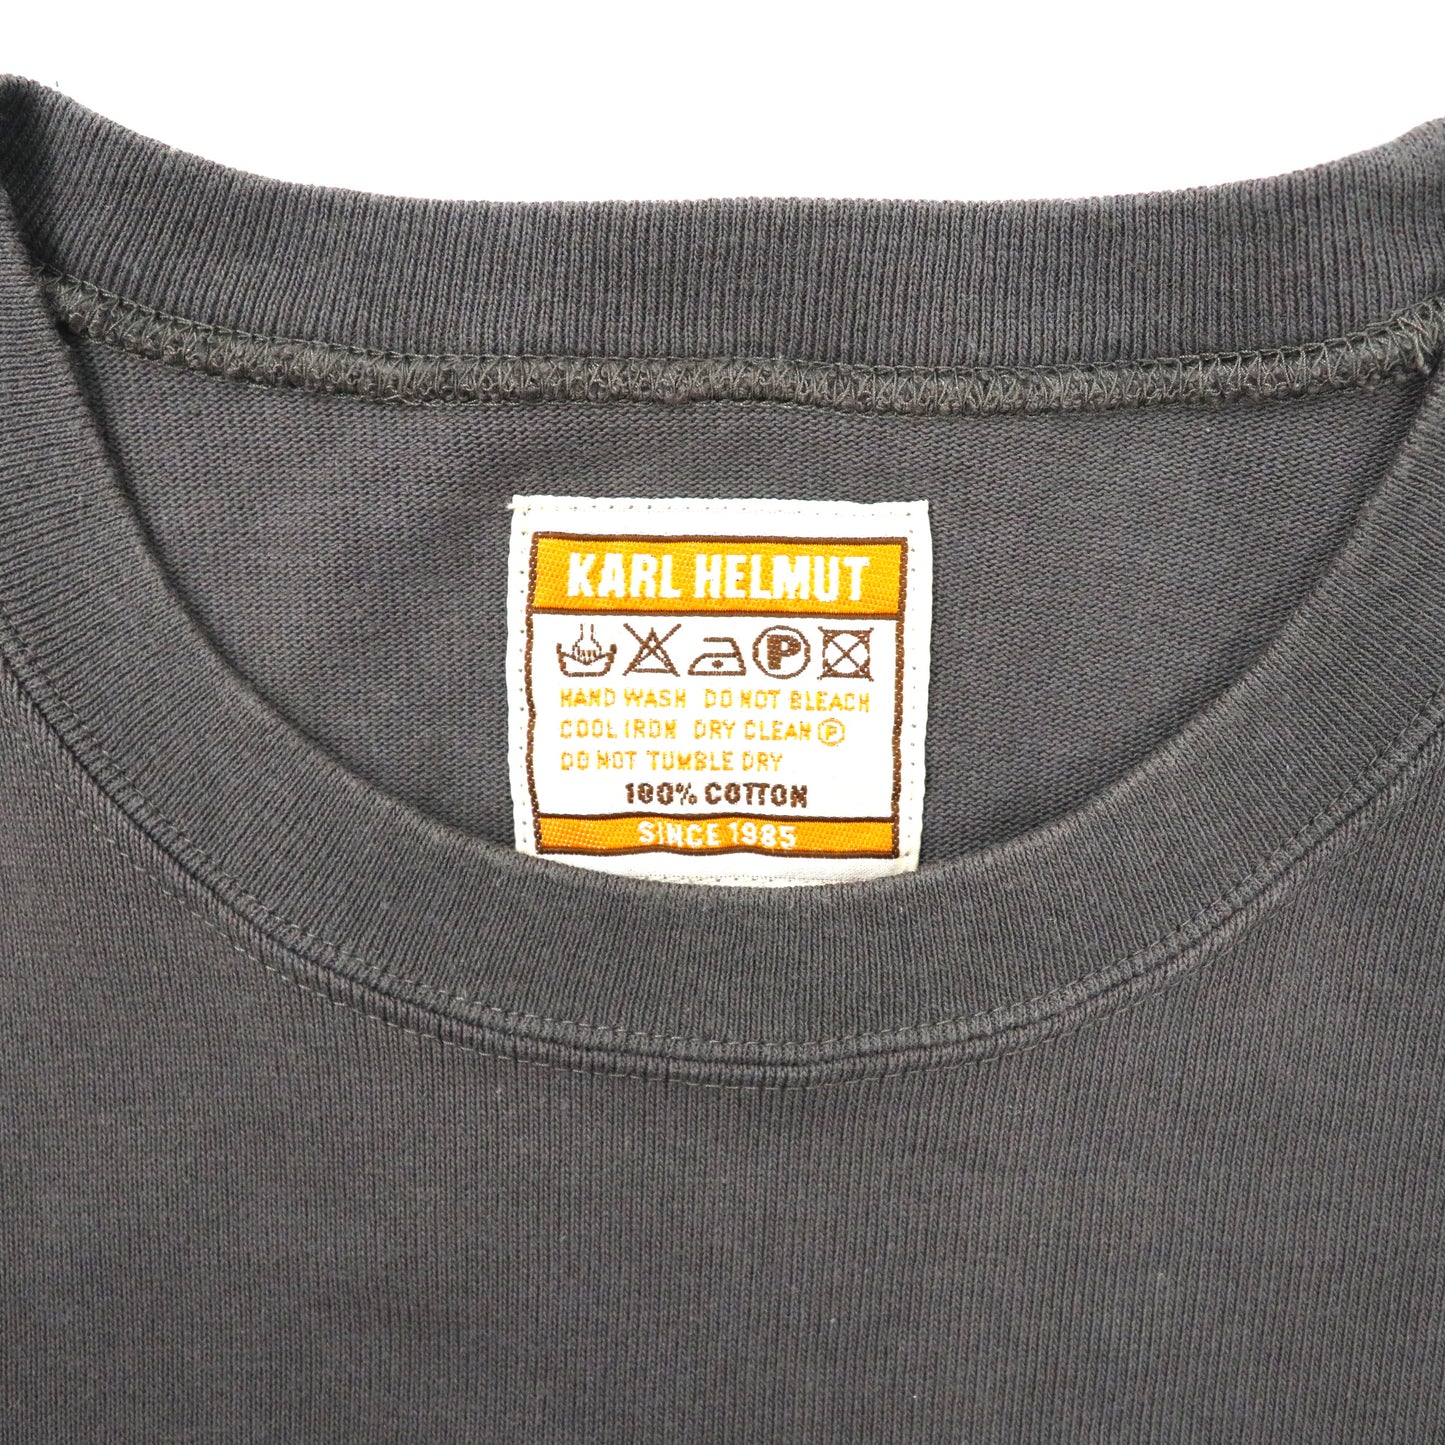 KARL HELMUT ロングスリーブTシャツ L グレー コットン テープロゴ 90年代